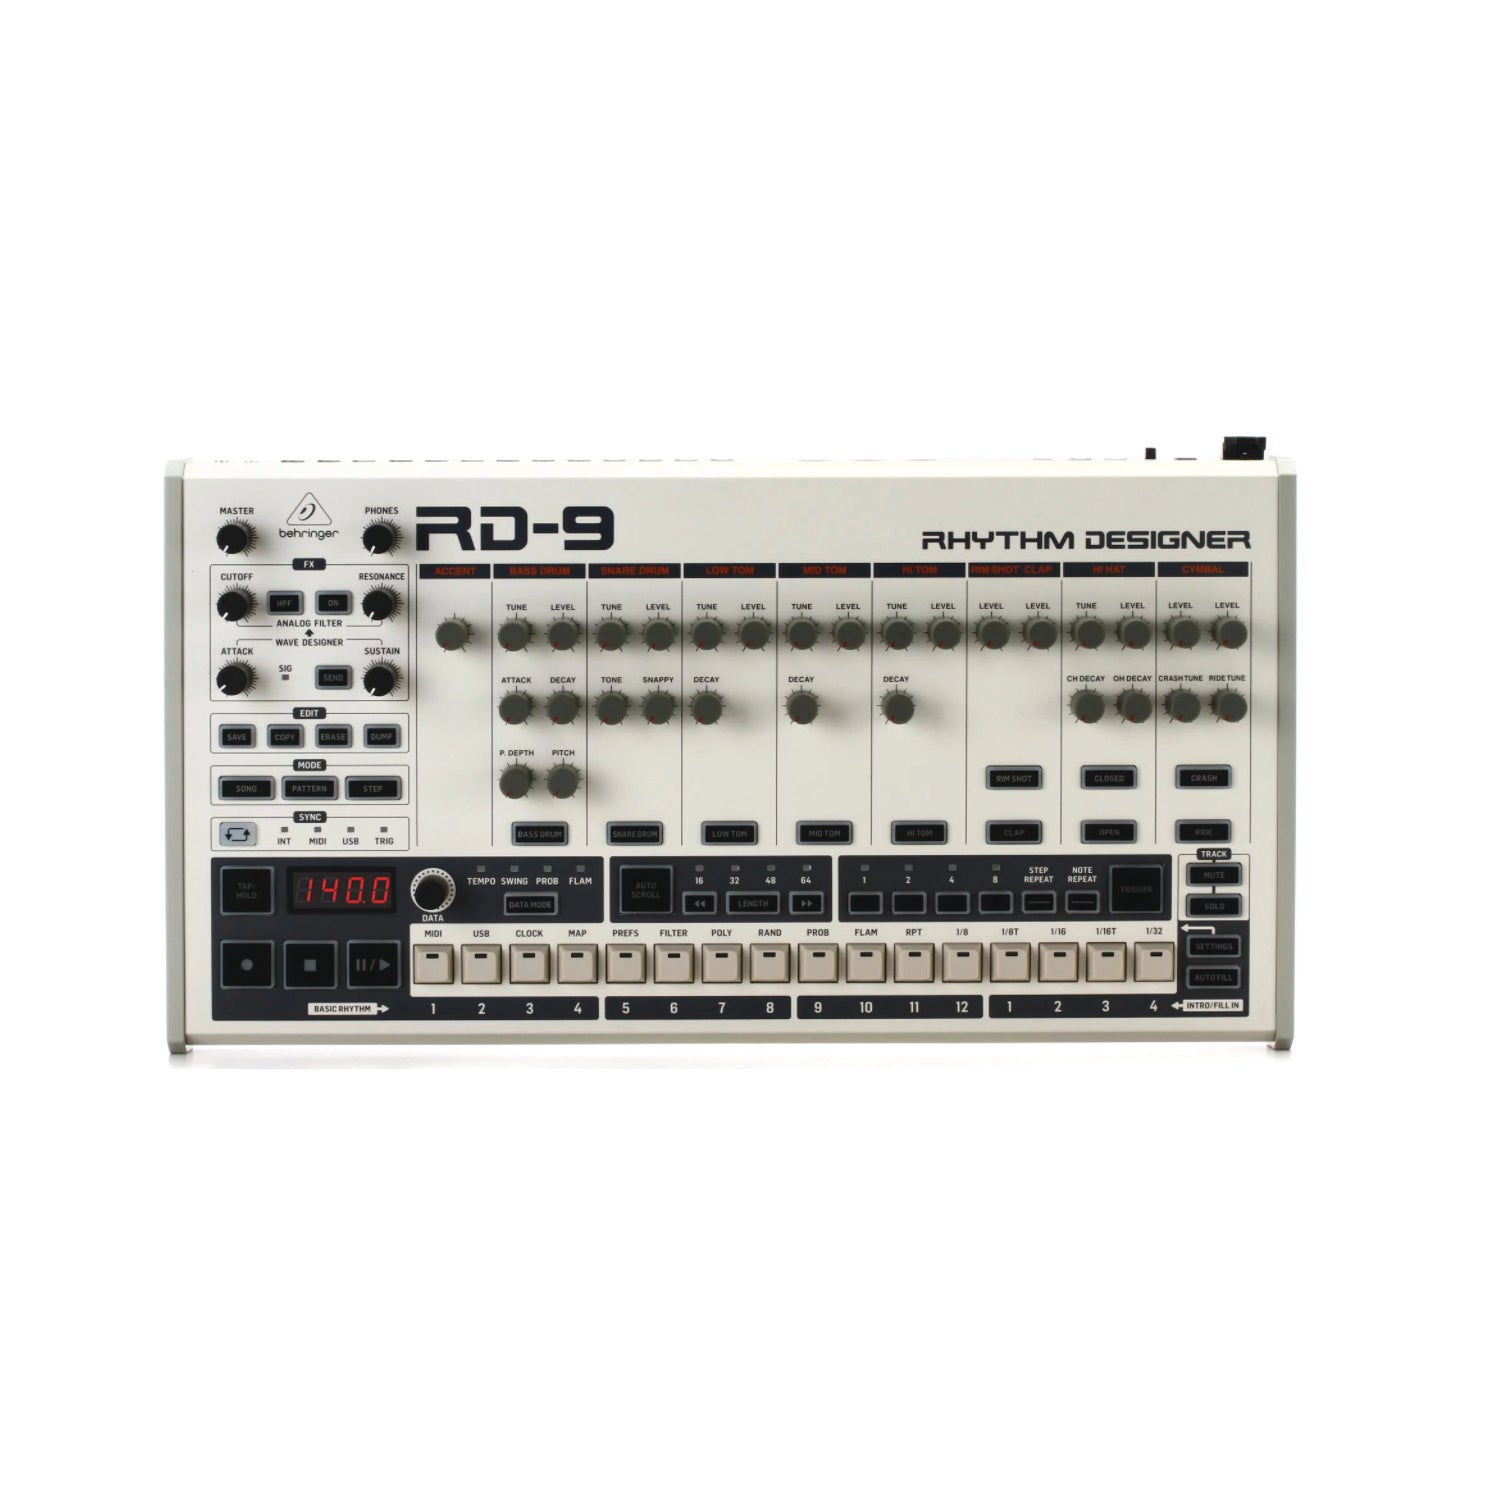 Behringer RD-9 RD9 Rhythm Designer Drum Machine MINT NEW Unused